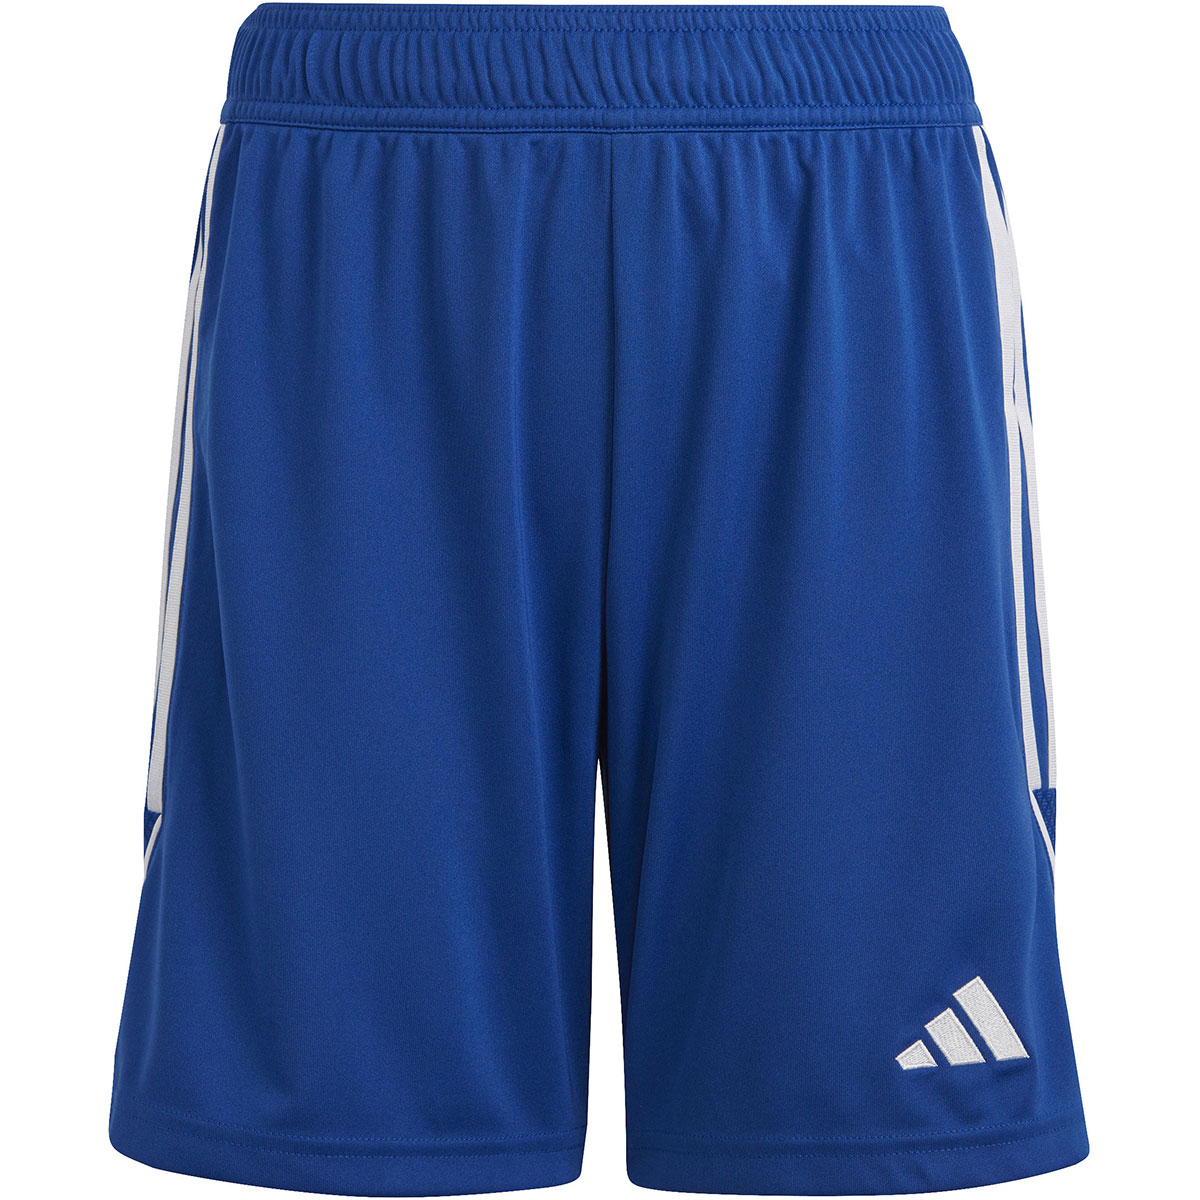 Adidas Kinder Shorts Tiro 23 blau-weiß